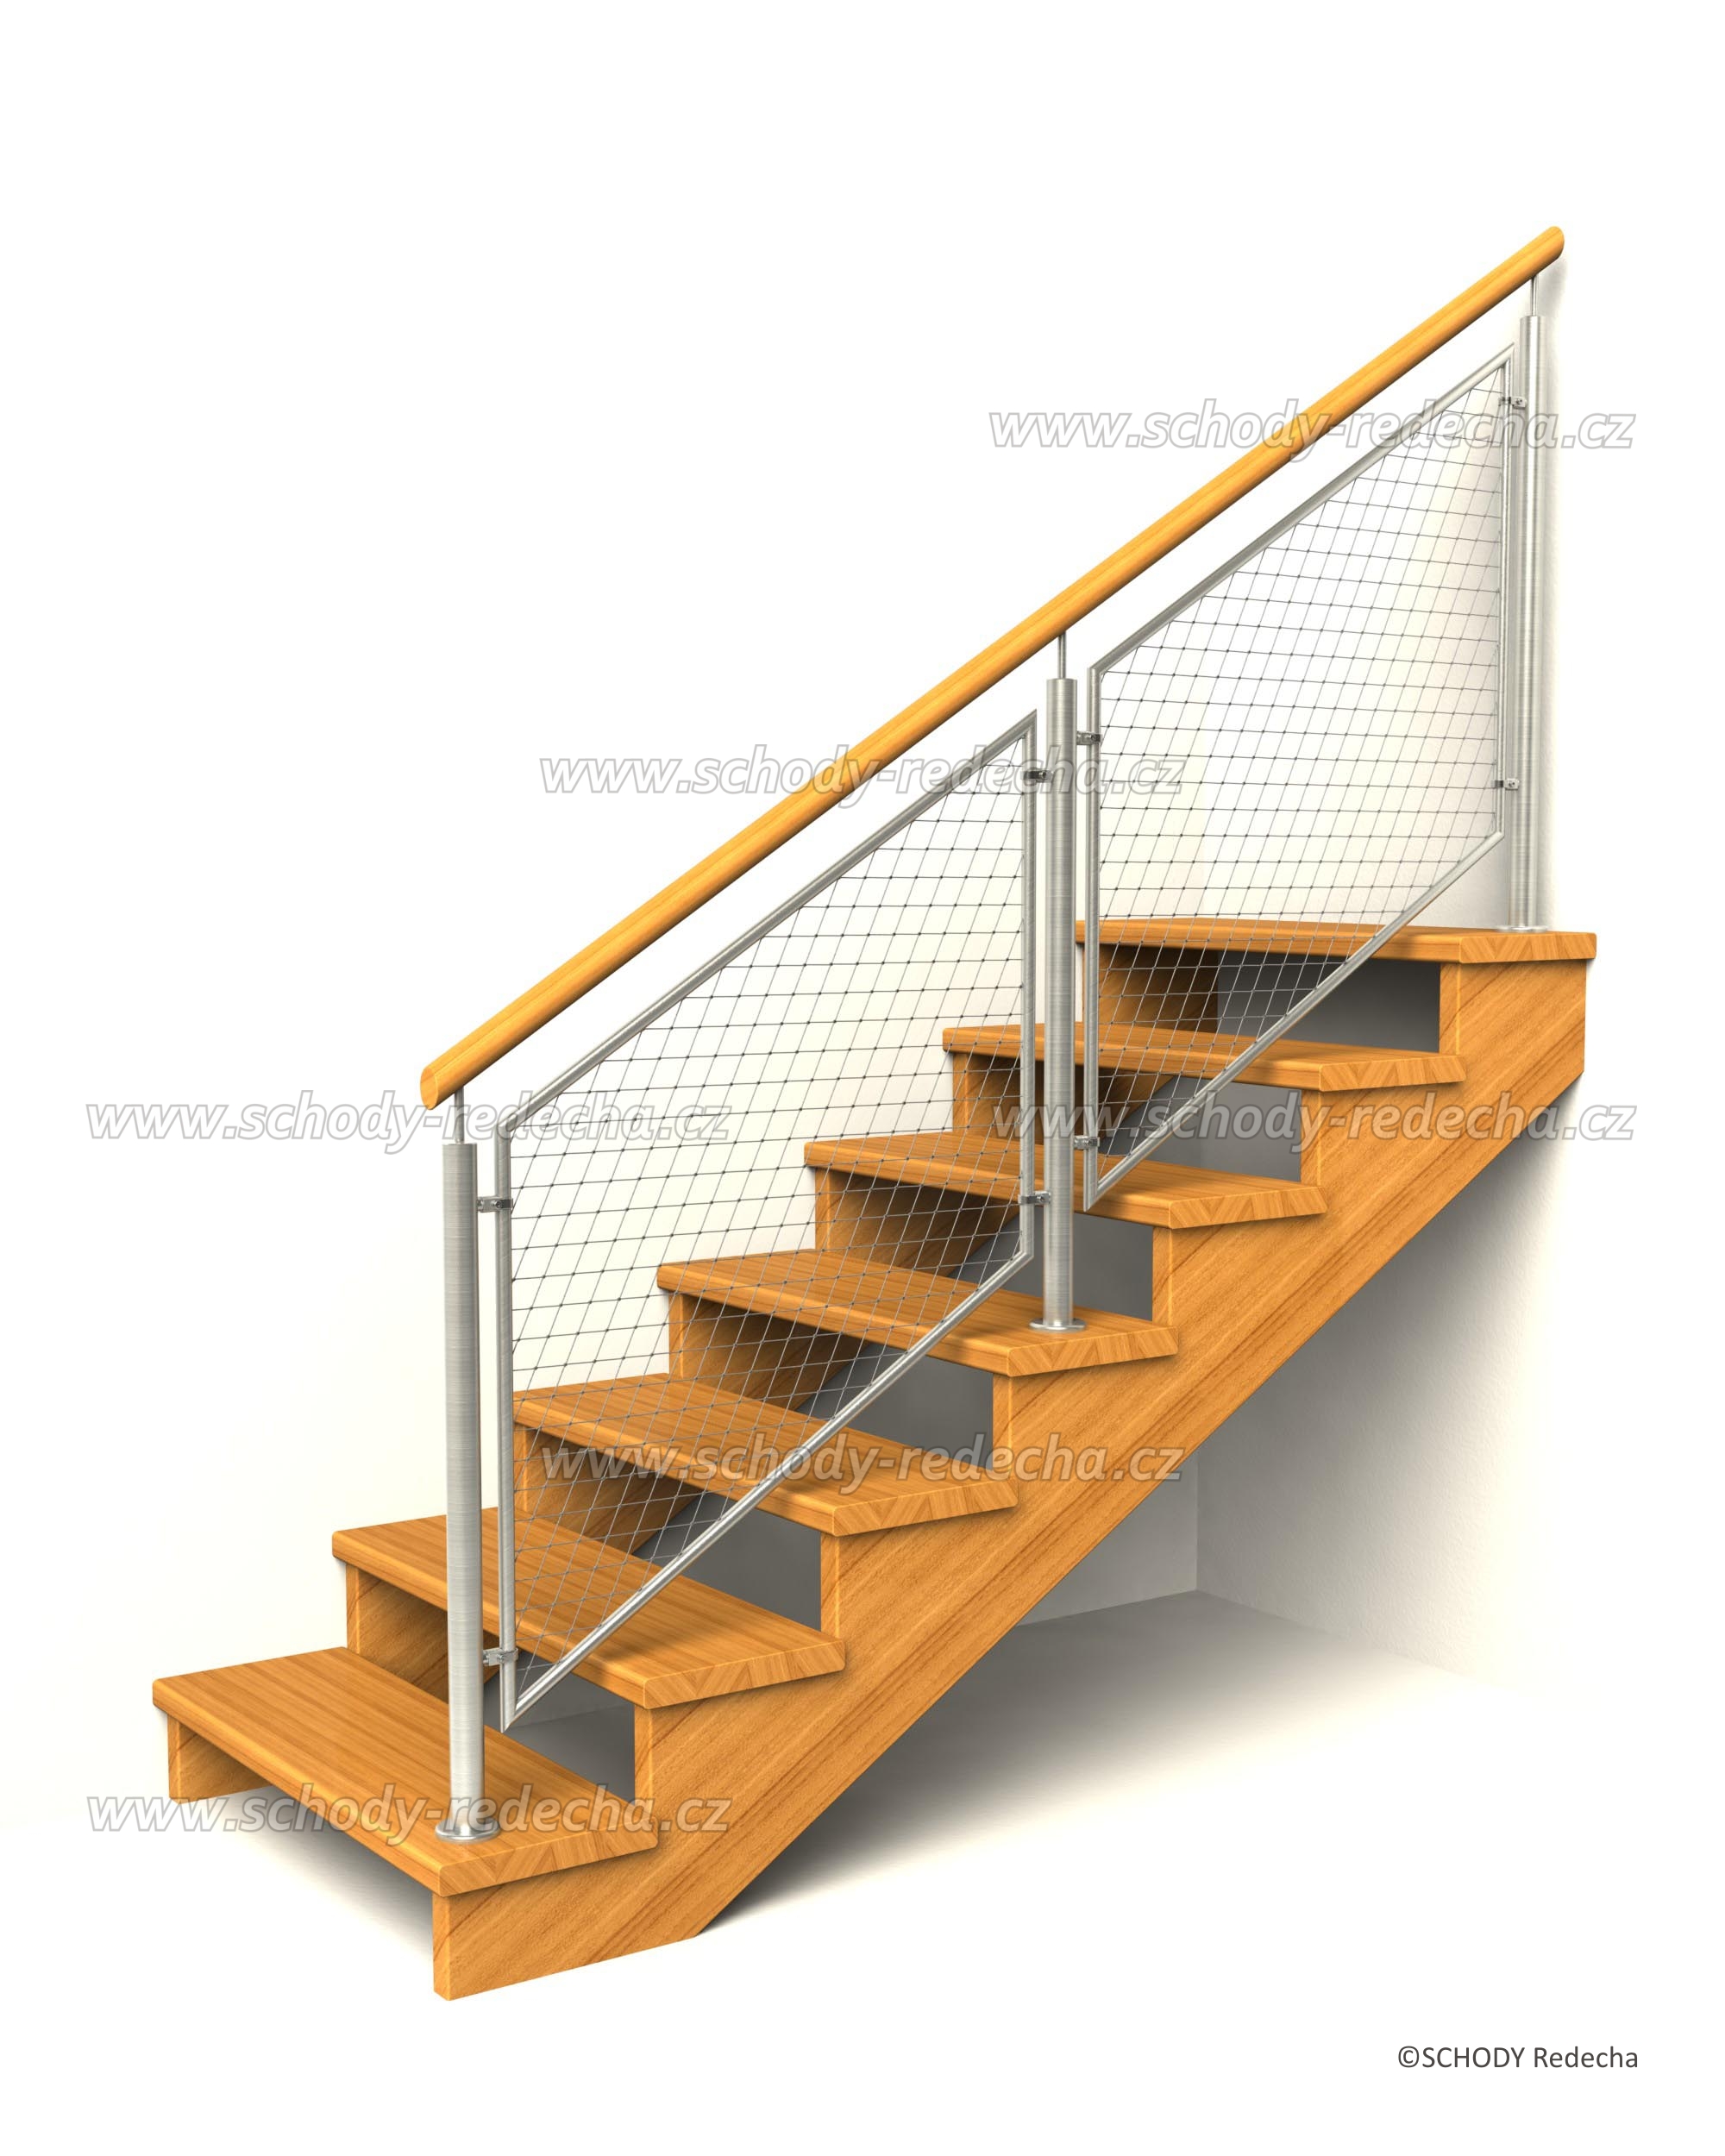 drevene schodiste schody IID8